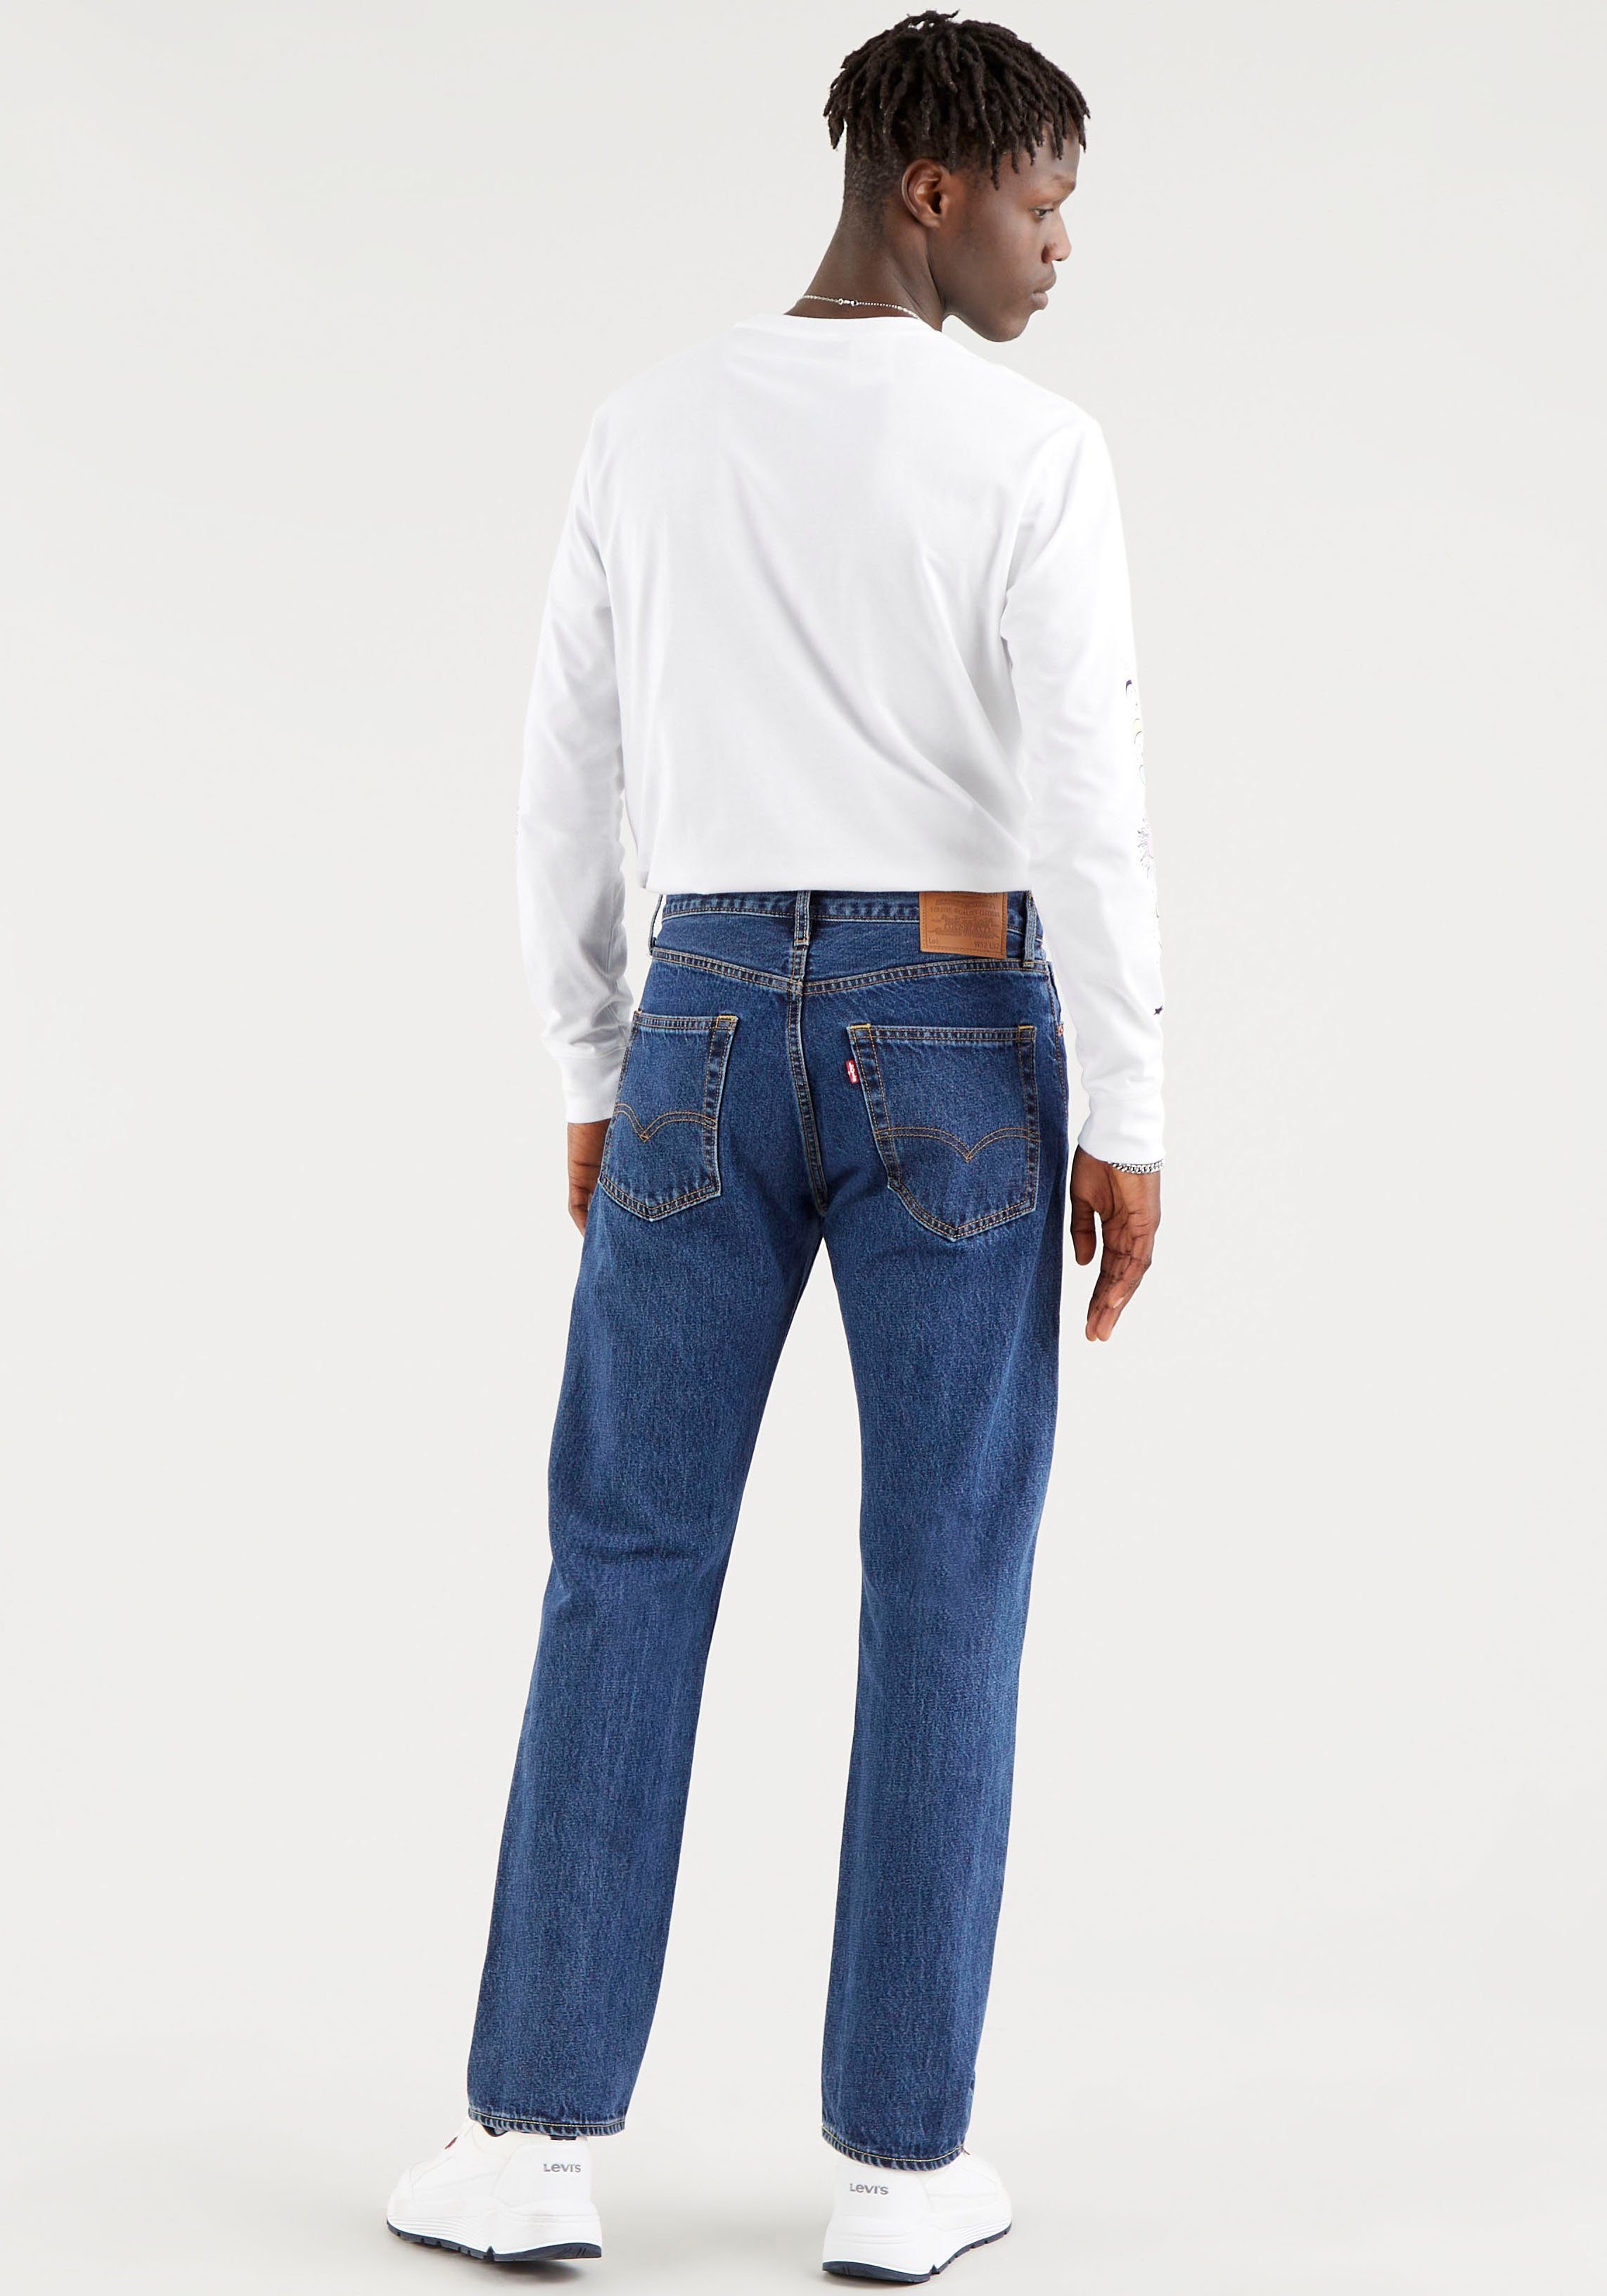 AUTHENTIC Levi's® 551Z Straight-Jeans Lederbadge mit WORM RUBBER